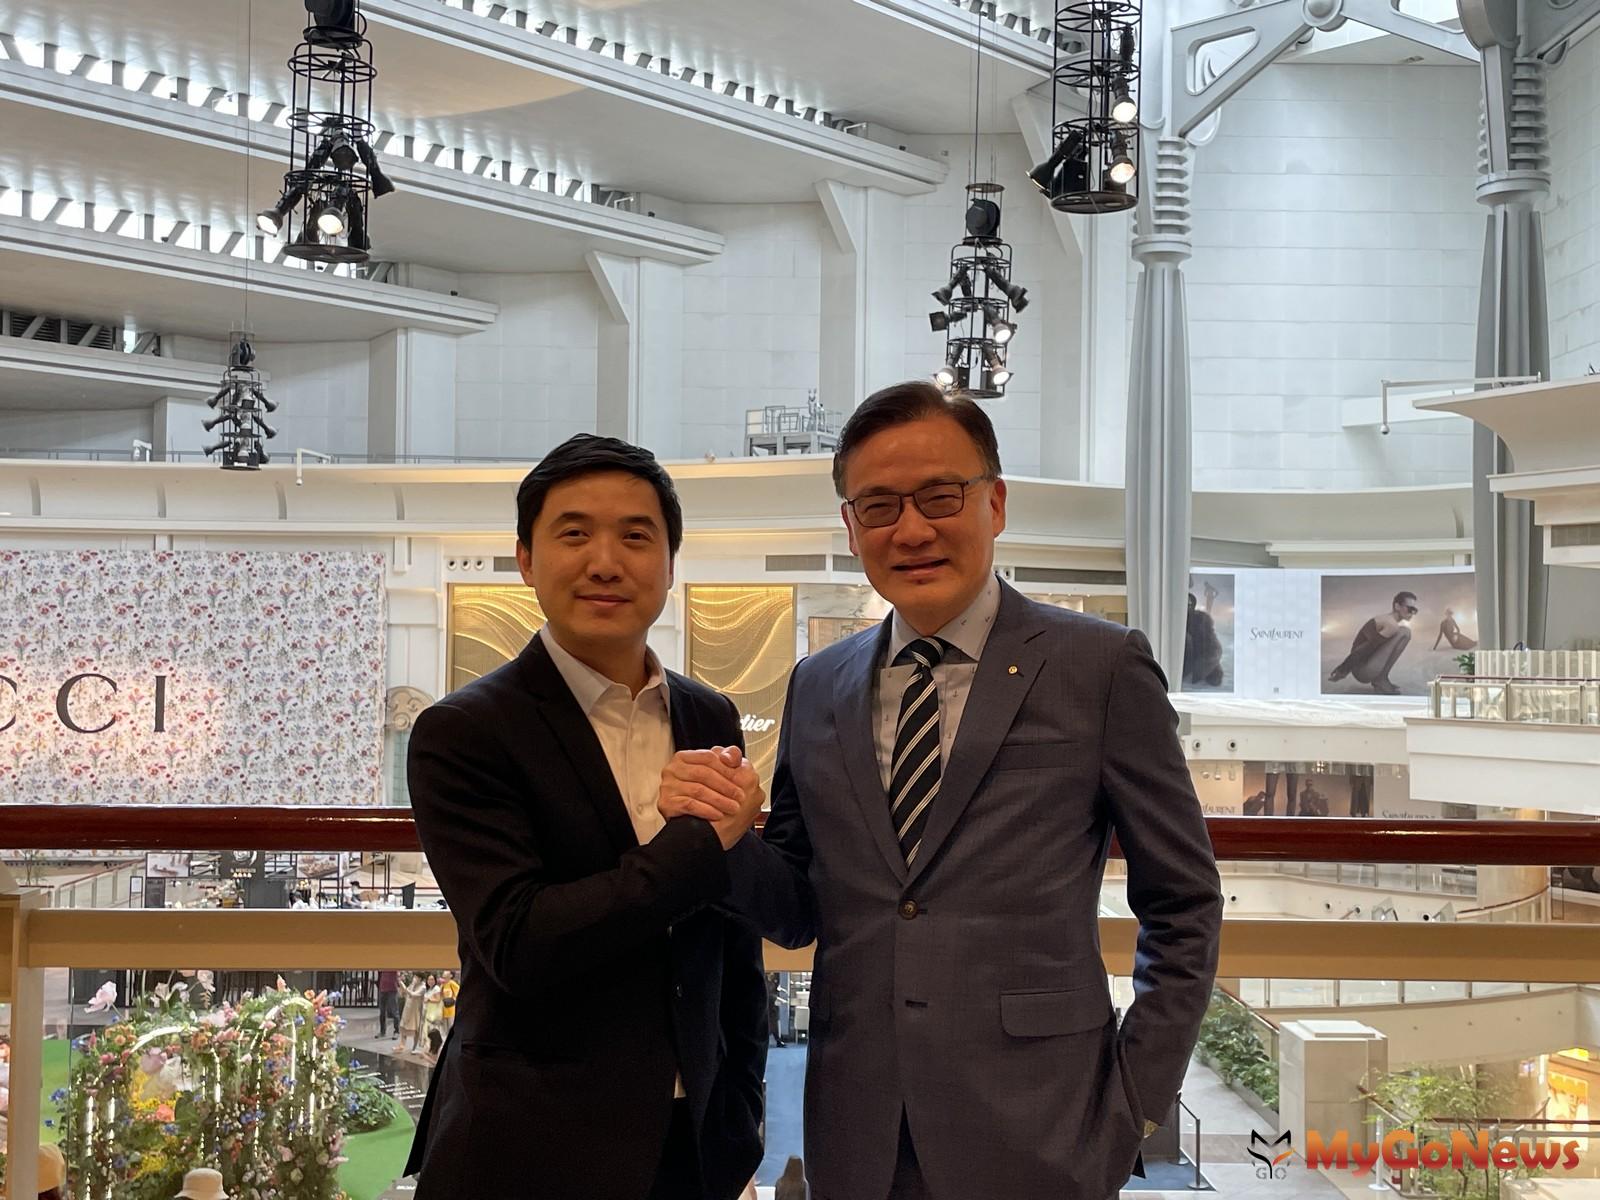 陳頌民(左)第一份工作是在世邦魏理仕，當時聘用他的時任總經理、便是現在高力國際董事總經理劉學龍(右)。 MyGoNews房地產新聞 市場快訊